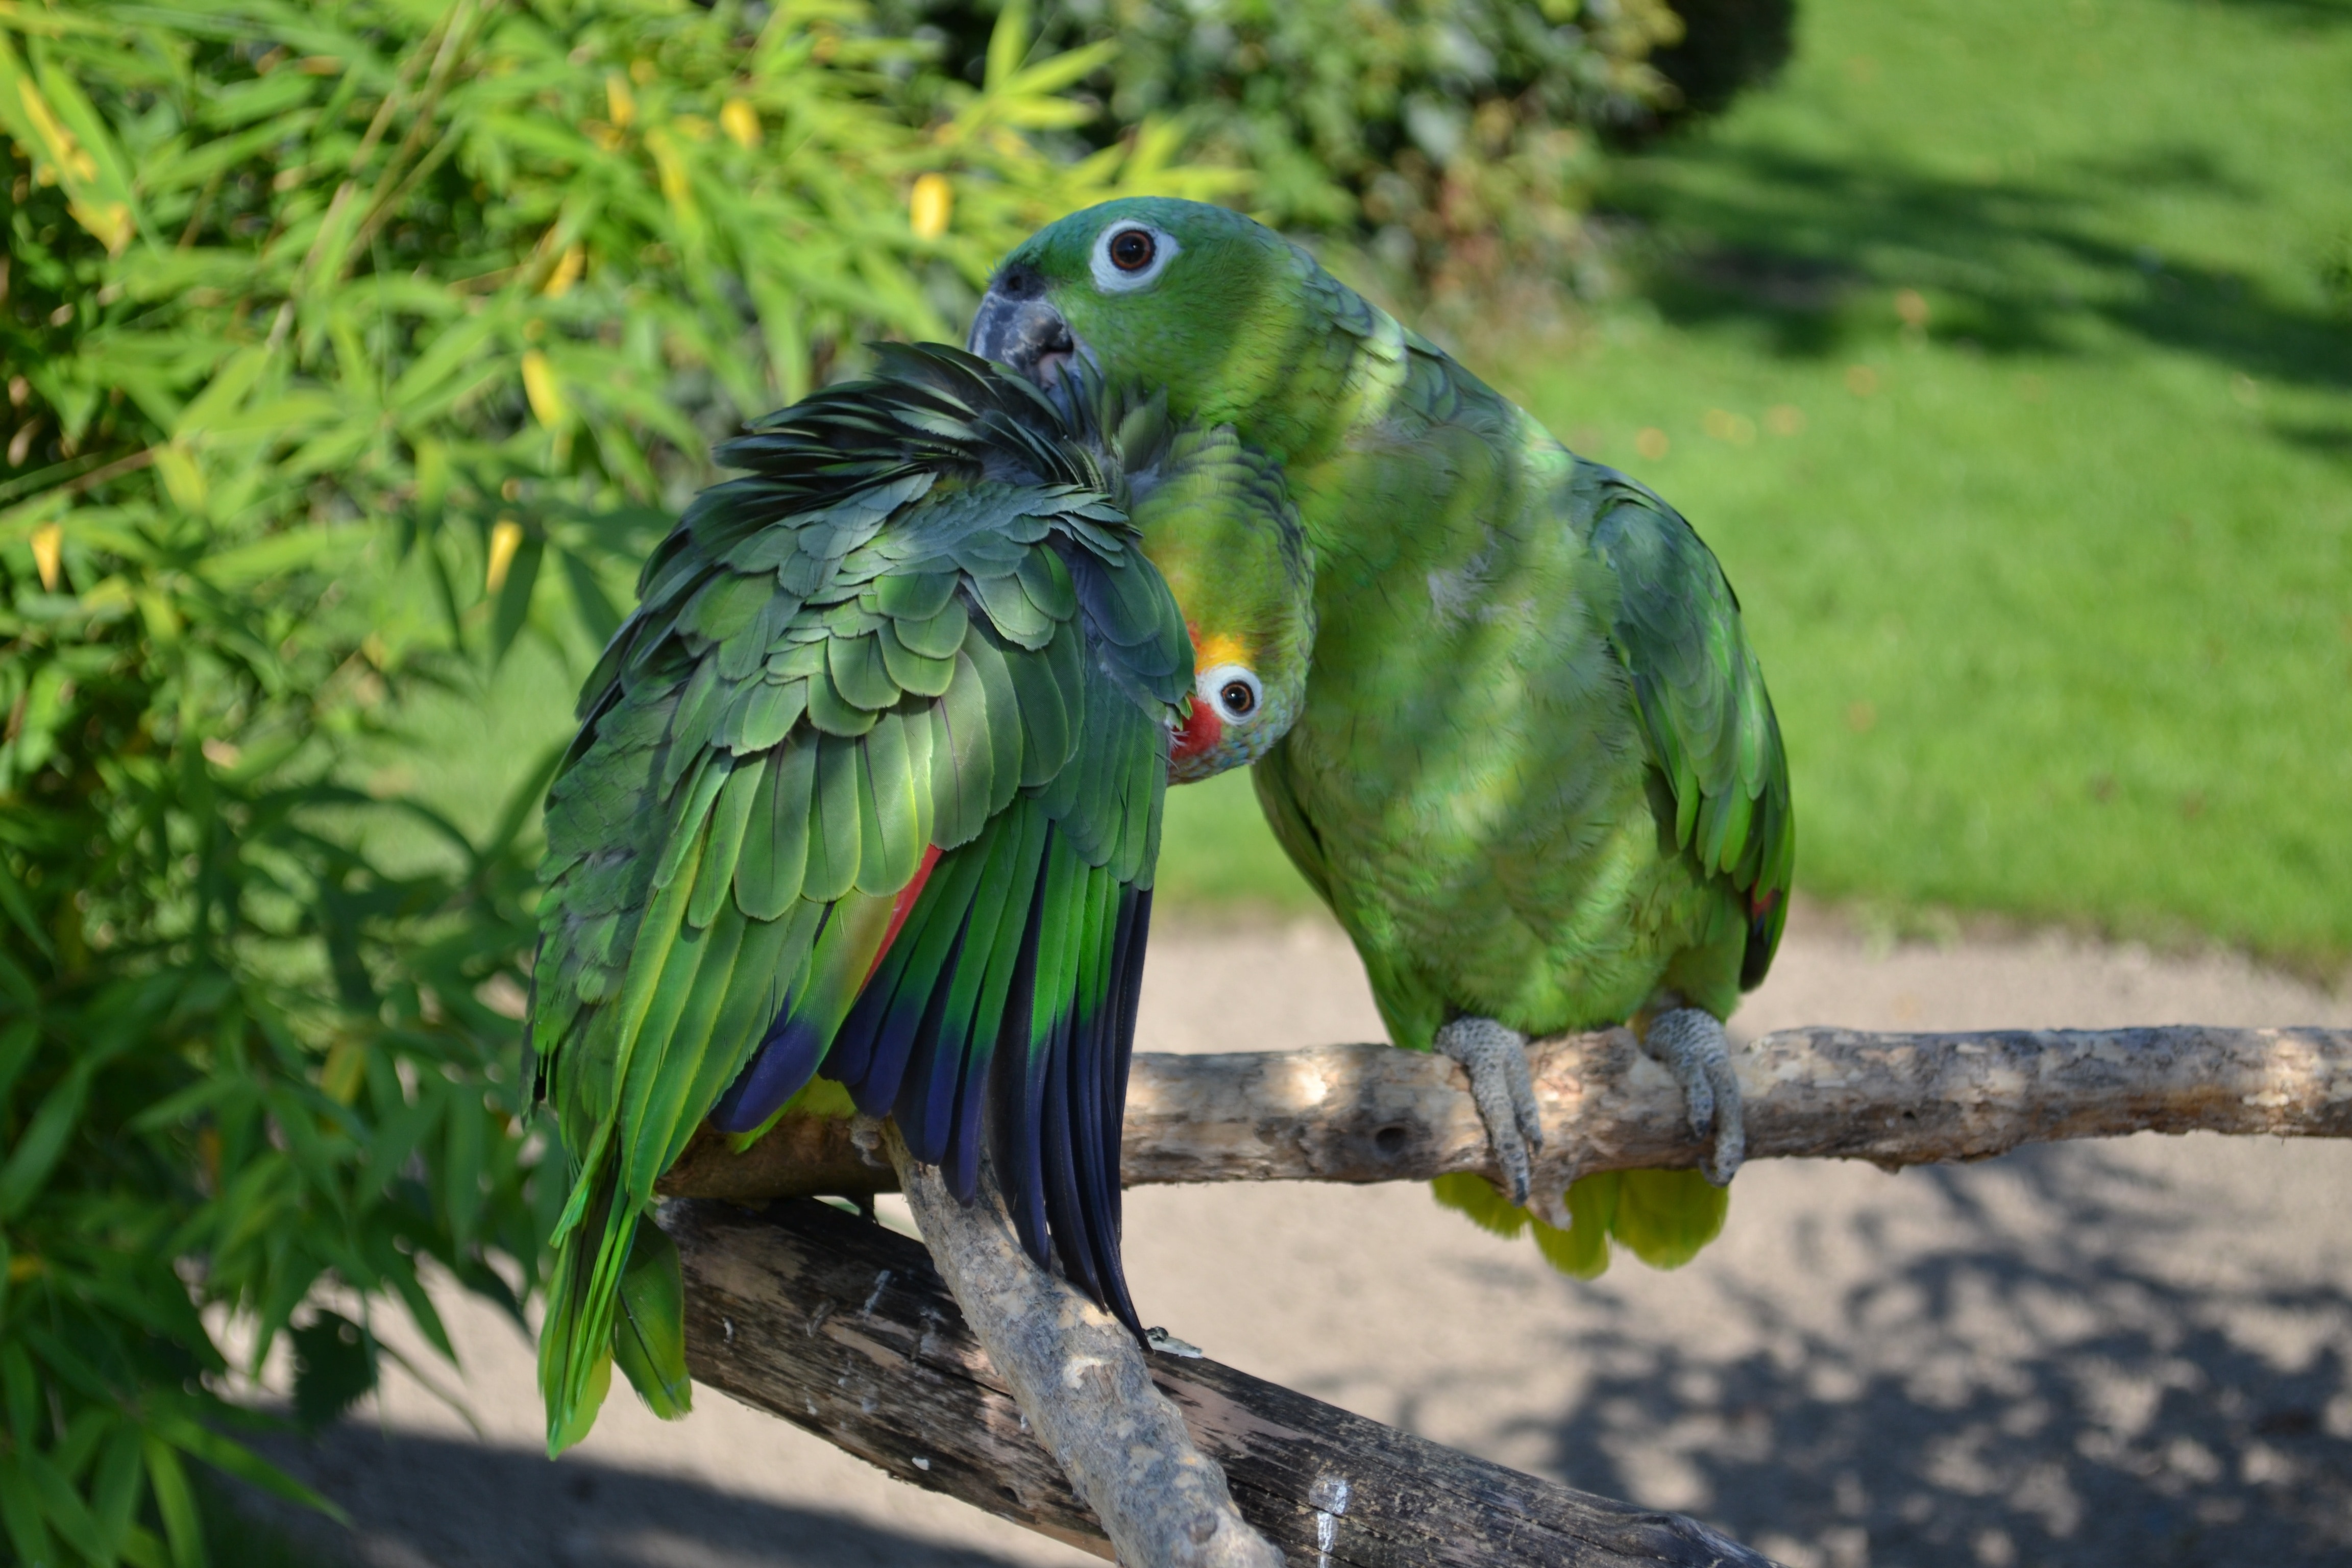 2 green parrots